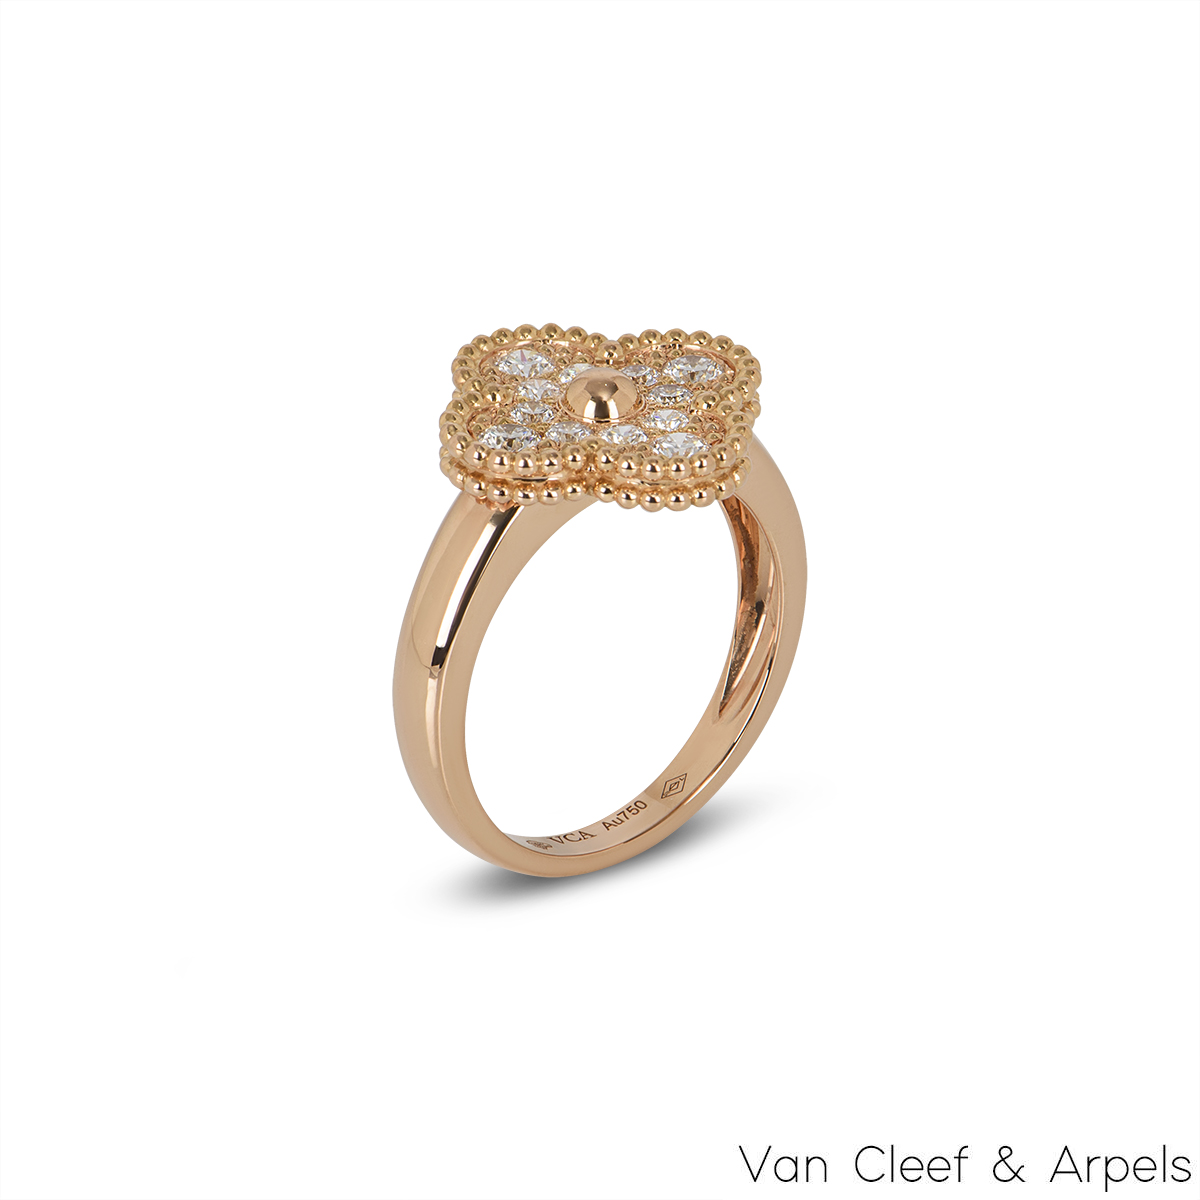 Authentic Van Cleef & Arpels Vintage Alhambra Ring #260-006